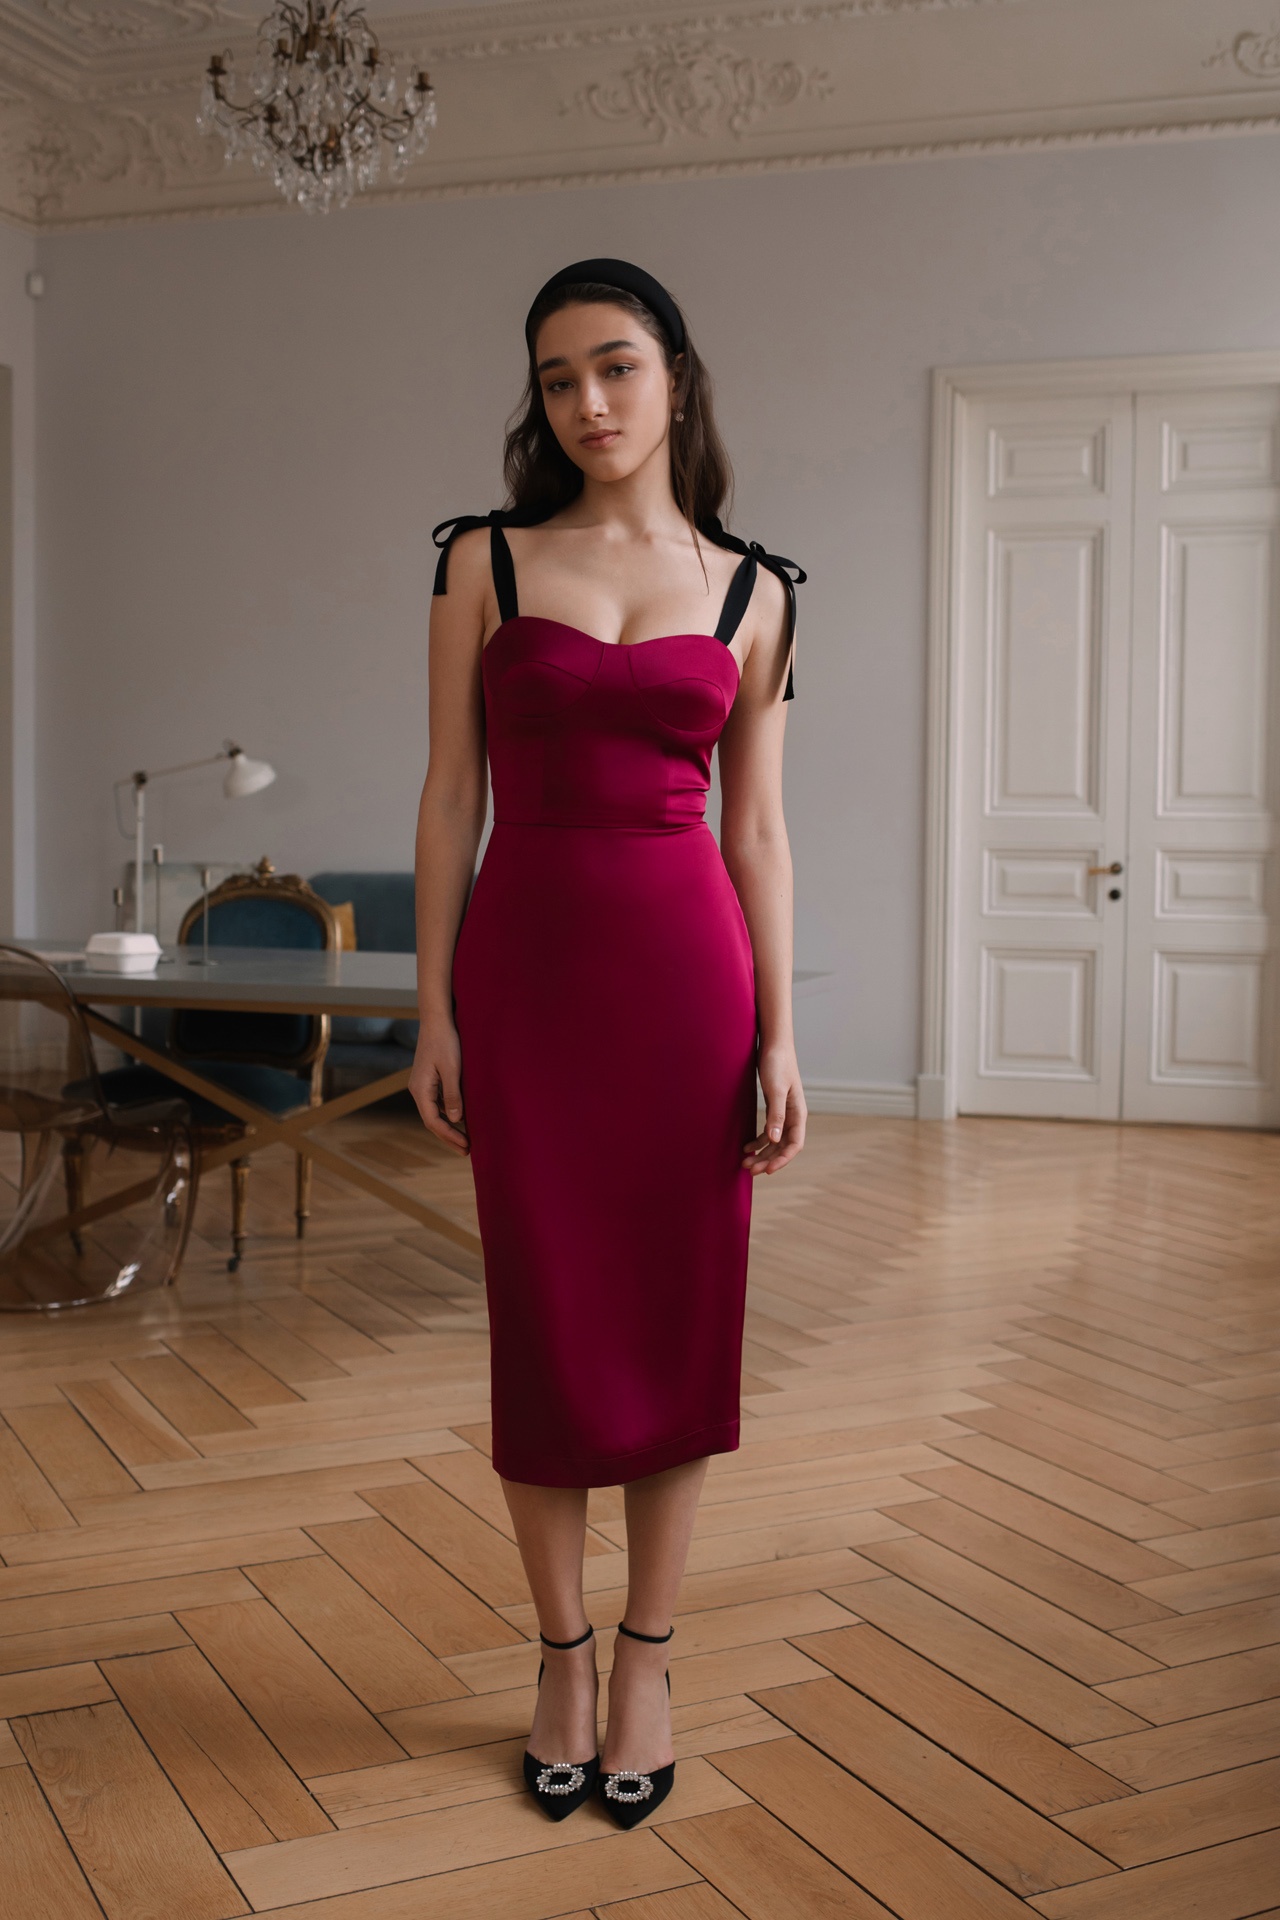 Платье-бюстье из атласа в рубиновом цвете